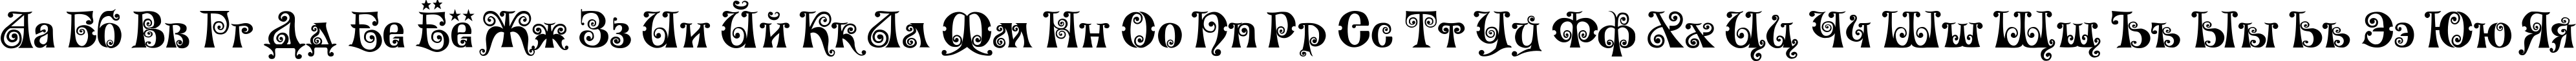 Пример написания русского алфавита шрифтом Wonderland